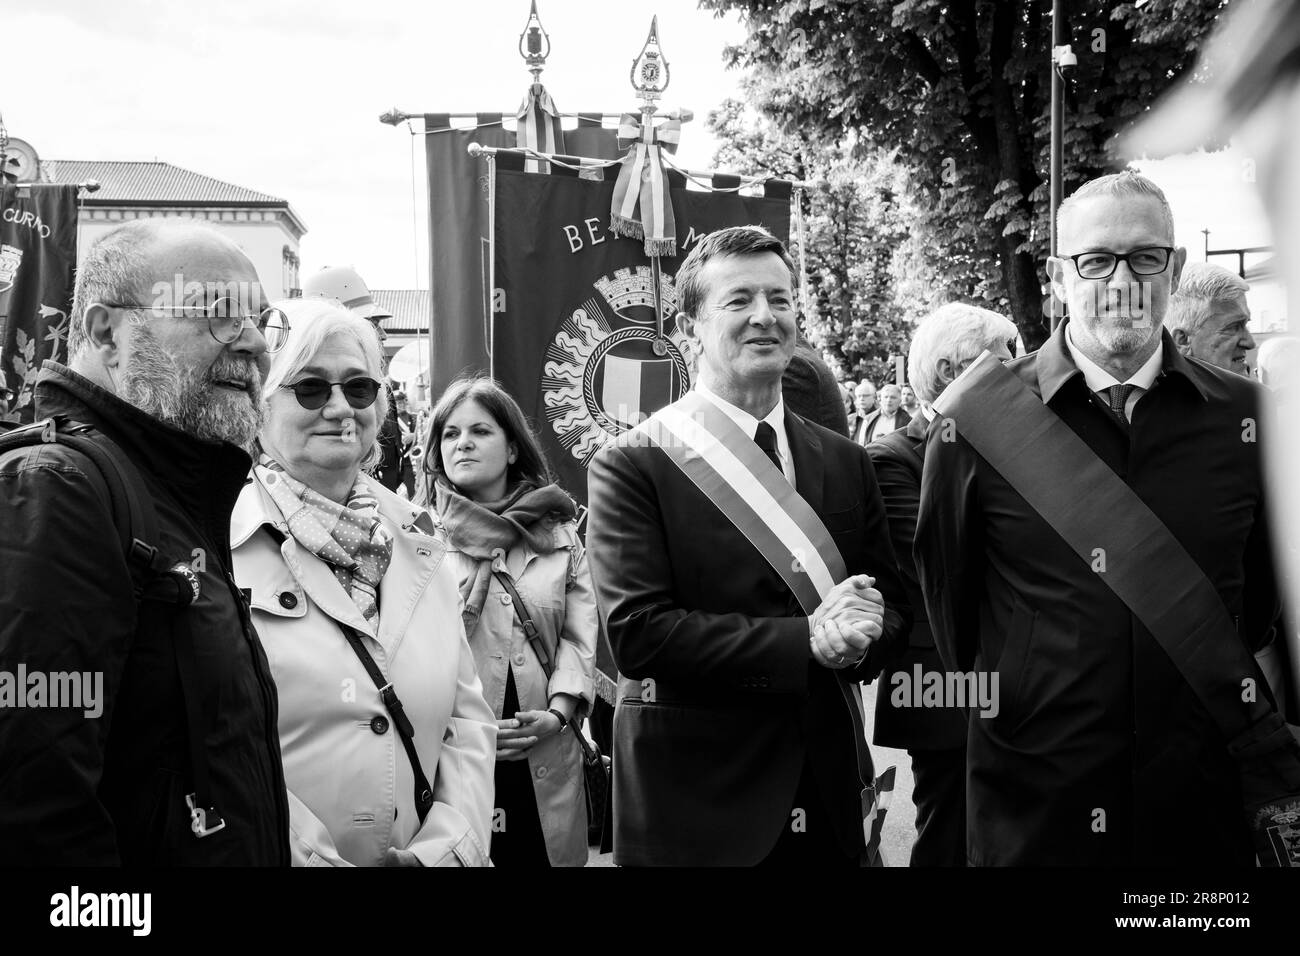 El político italiano Rosy Bindi, el alcalde Giorgio Gori y las autoridades locales durante el 25 de abril (Aniversario de la Liberación de Italia). Bérgamo, Italia. Foto de stock